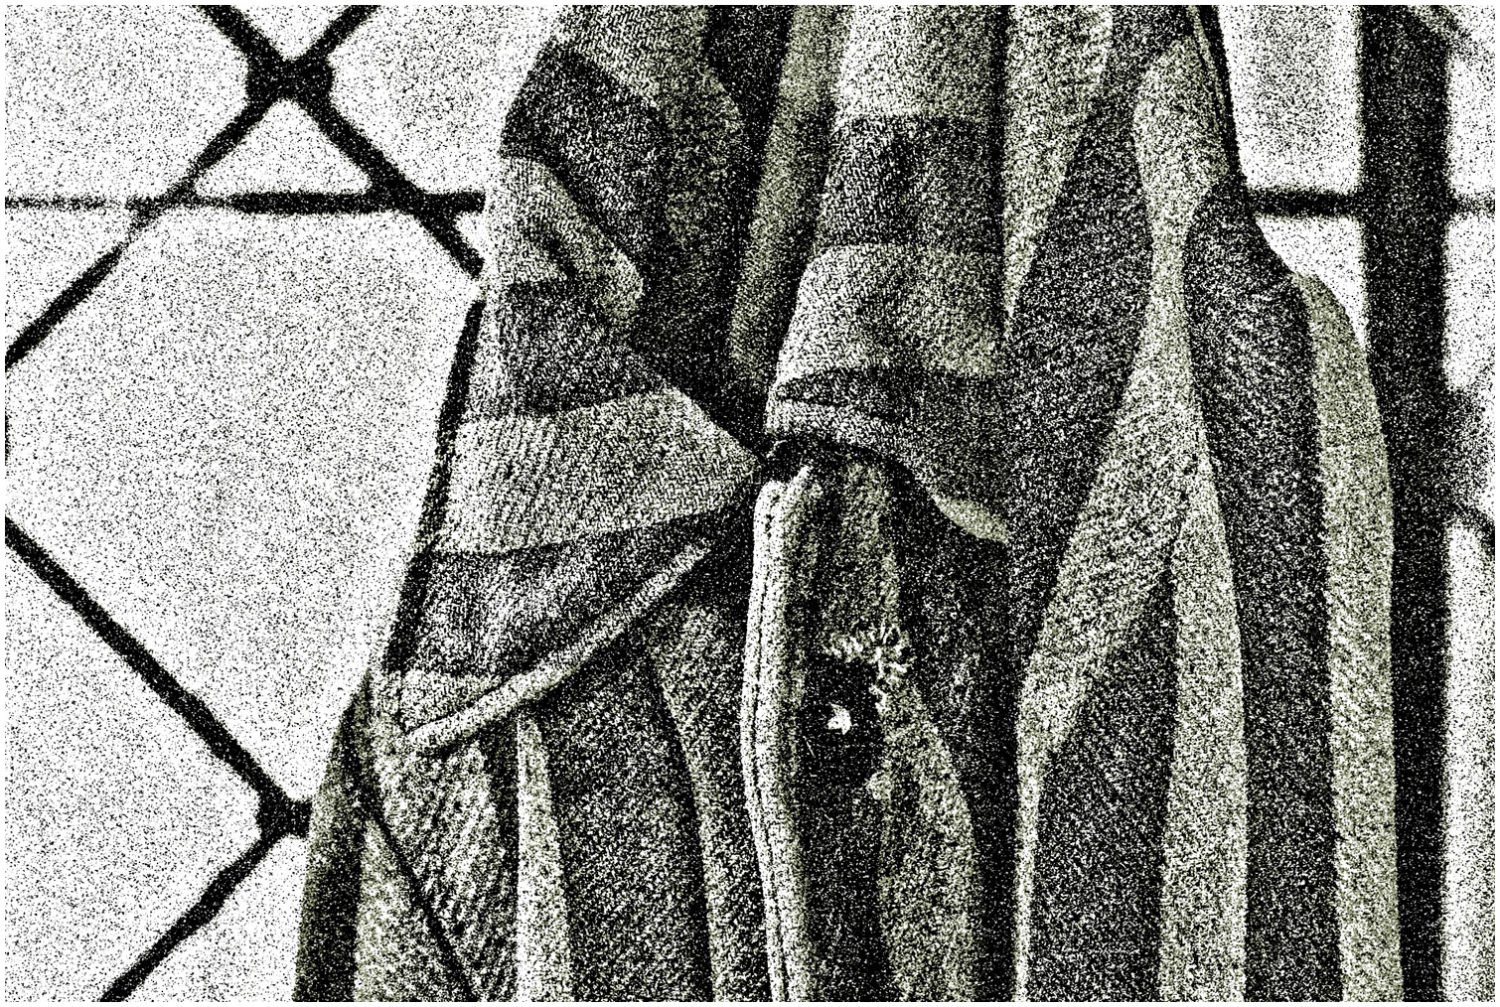 Ausschnitt einer gestreiften Gefängnisjacke, die an einem Haken hängt, grobkörnig verfremdet.